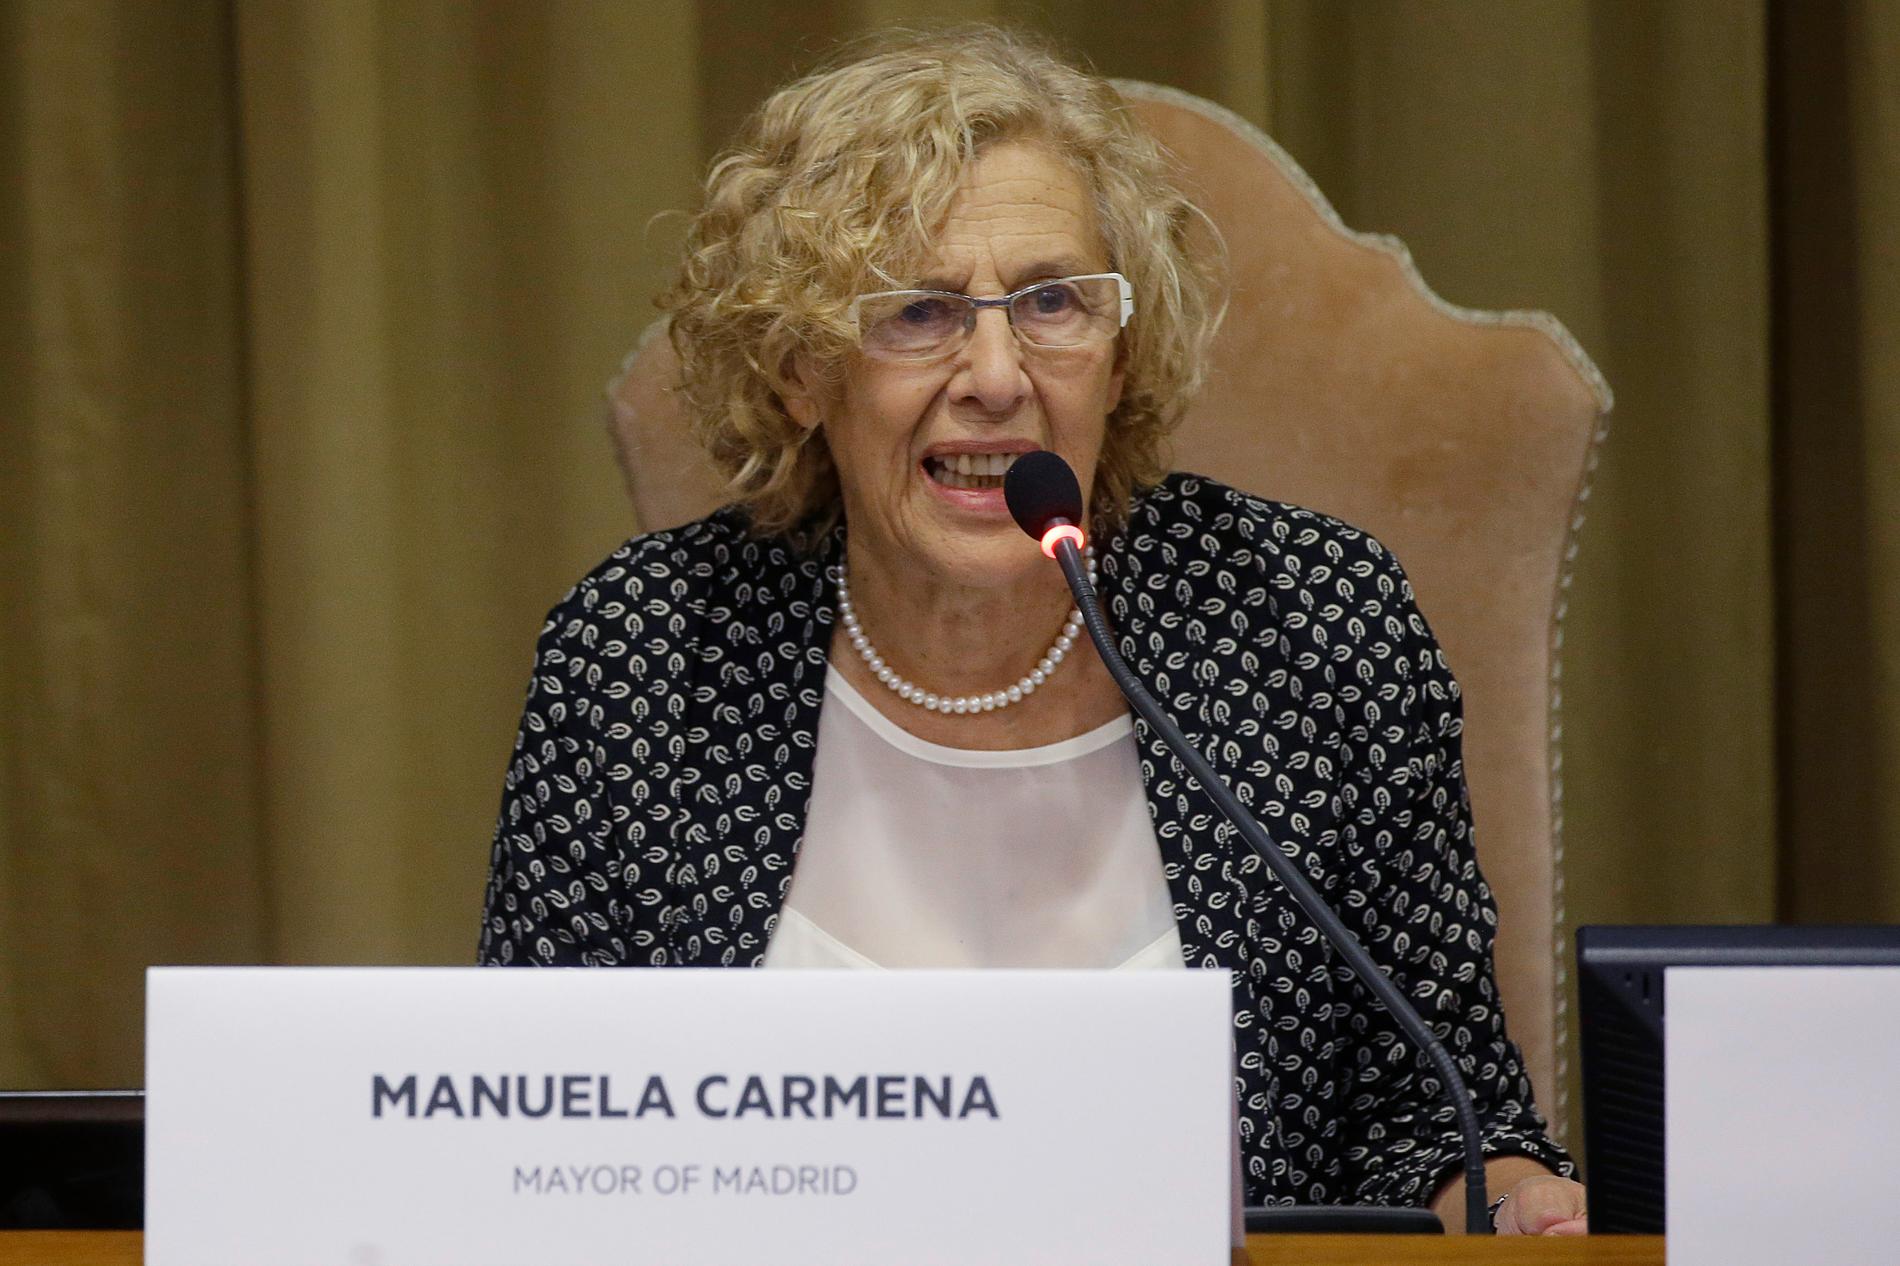 Vänsterpolitikern Manuela Carmena lämnar posten som Madrids borgmästare. Arkivbild.